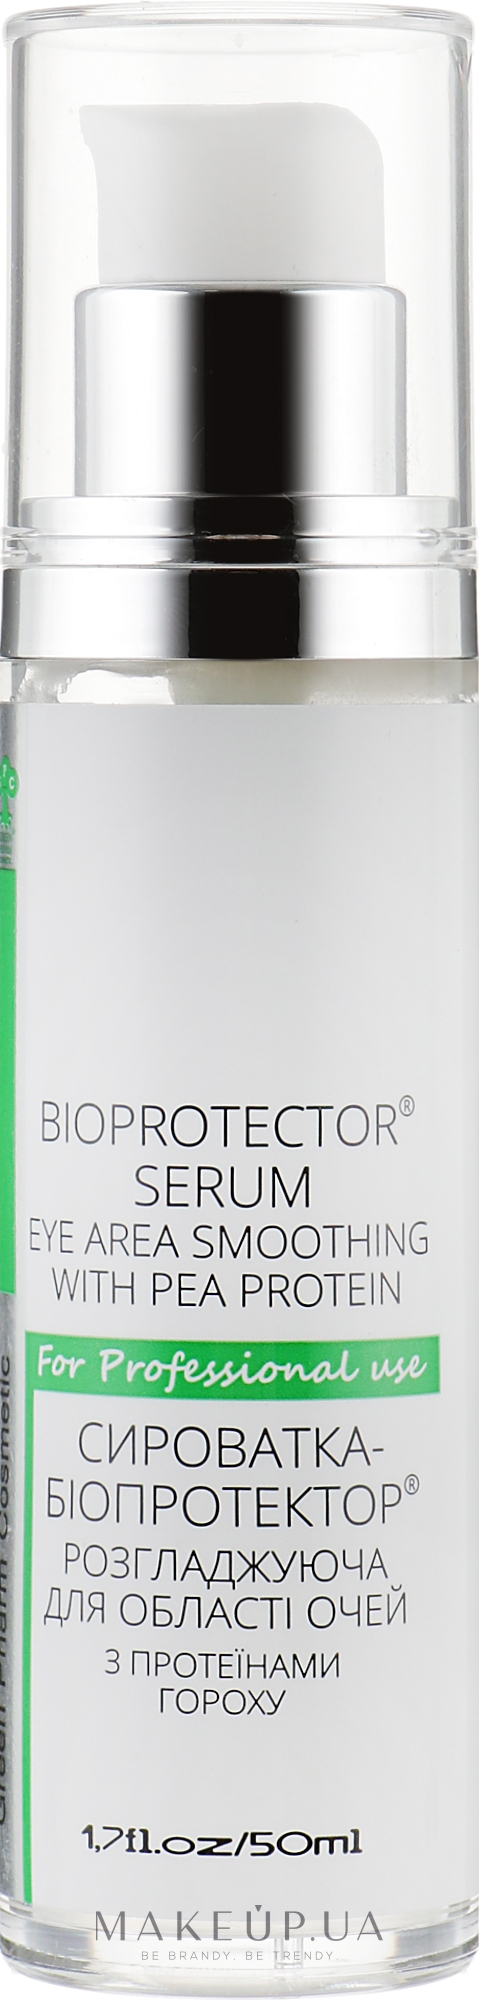 Сыворотка-биопротектор разглаживающая для области глаз c протеинами гороха - Green Pharm Cosmetic PH 5,5 — фото 50ml